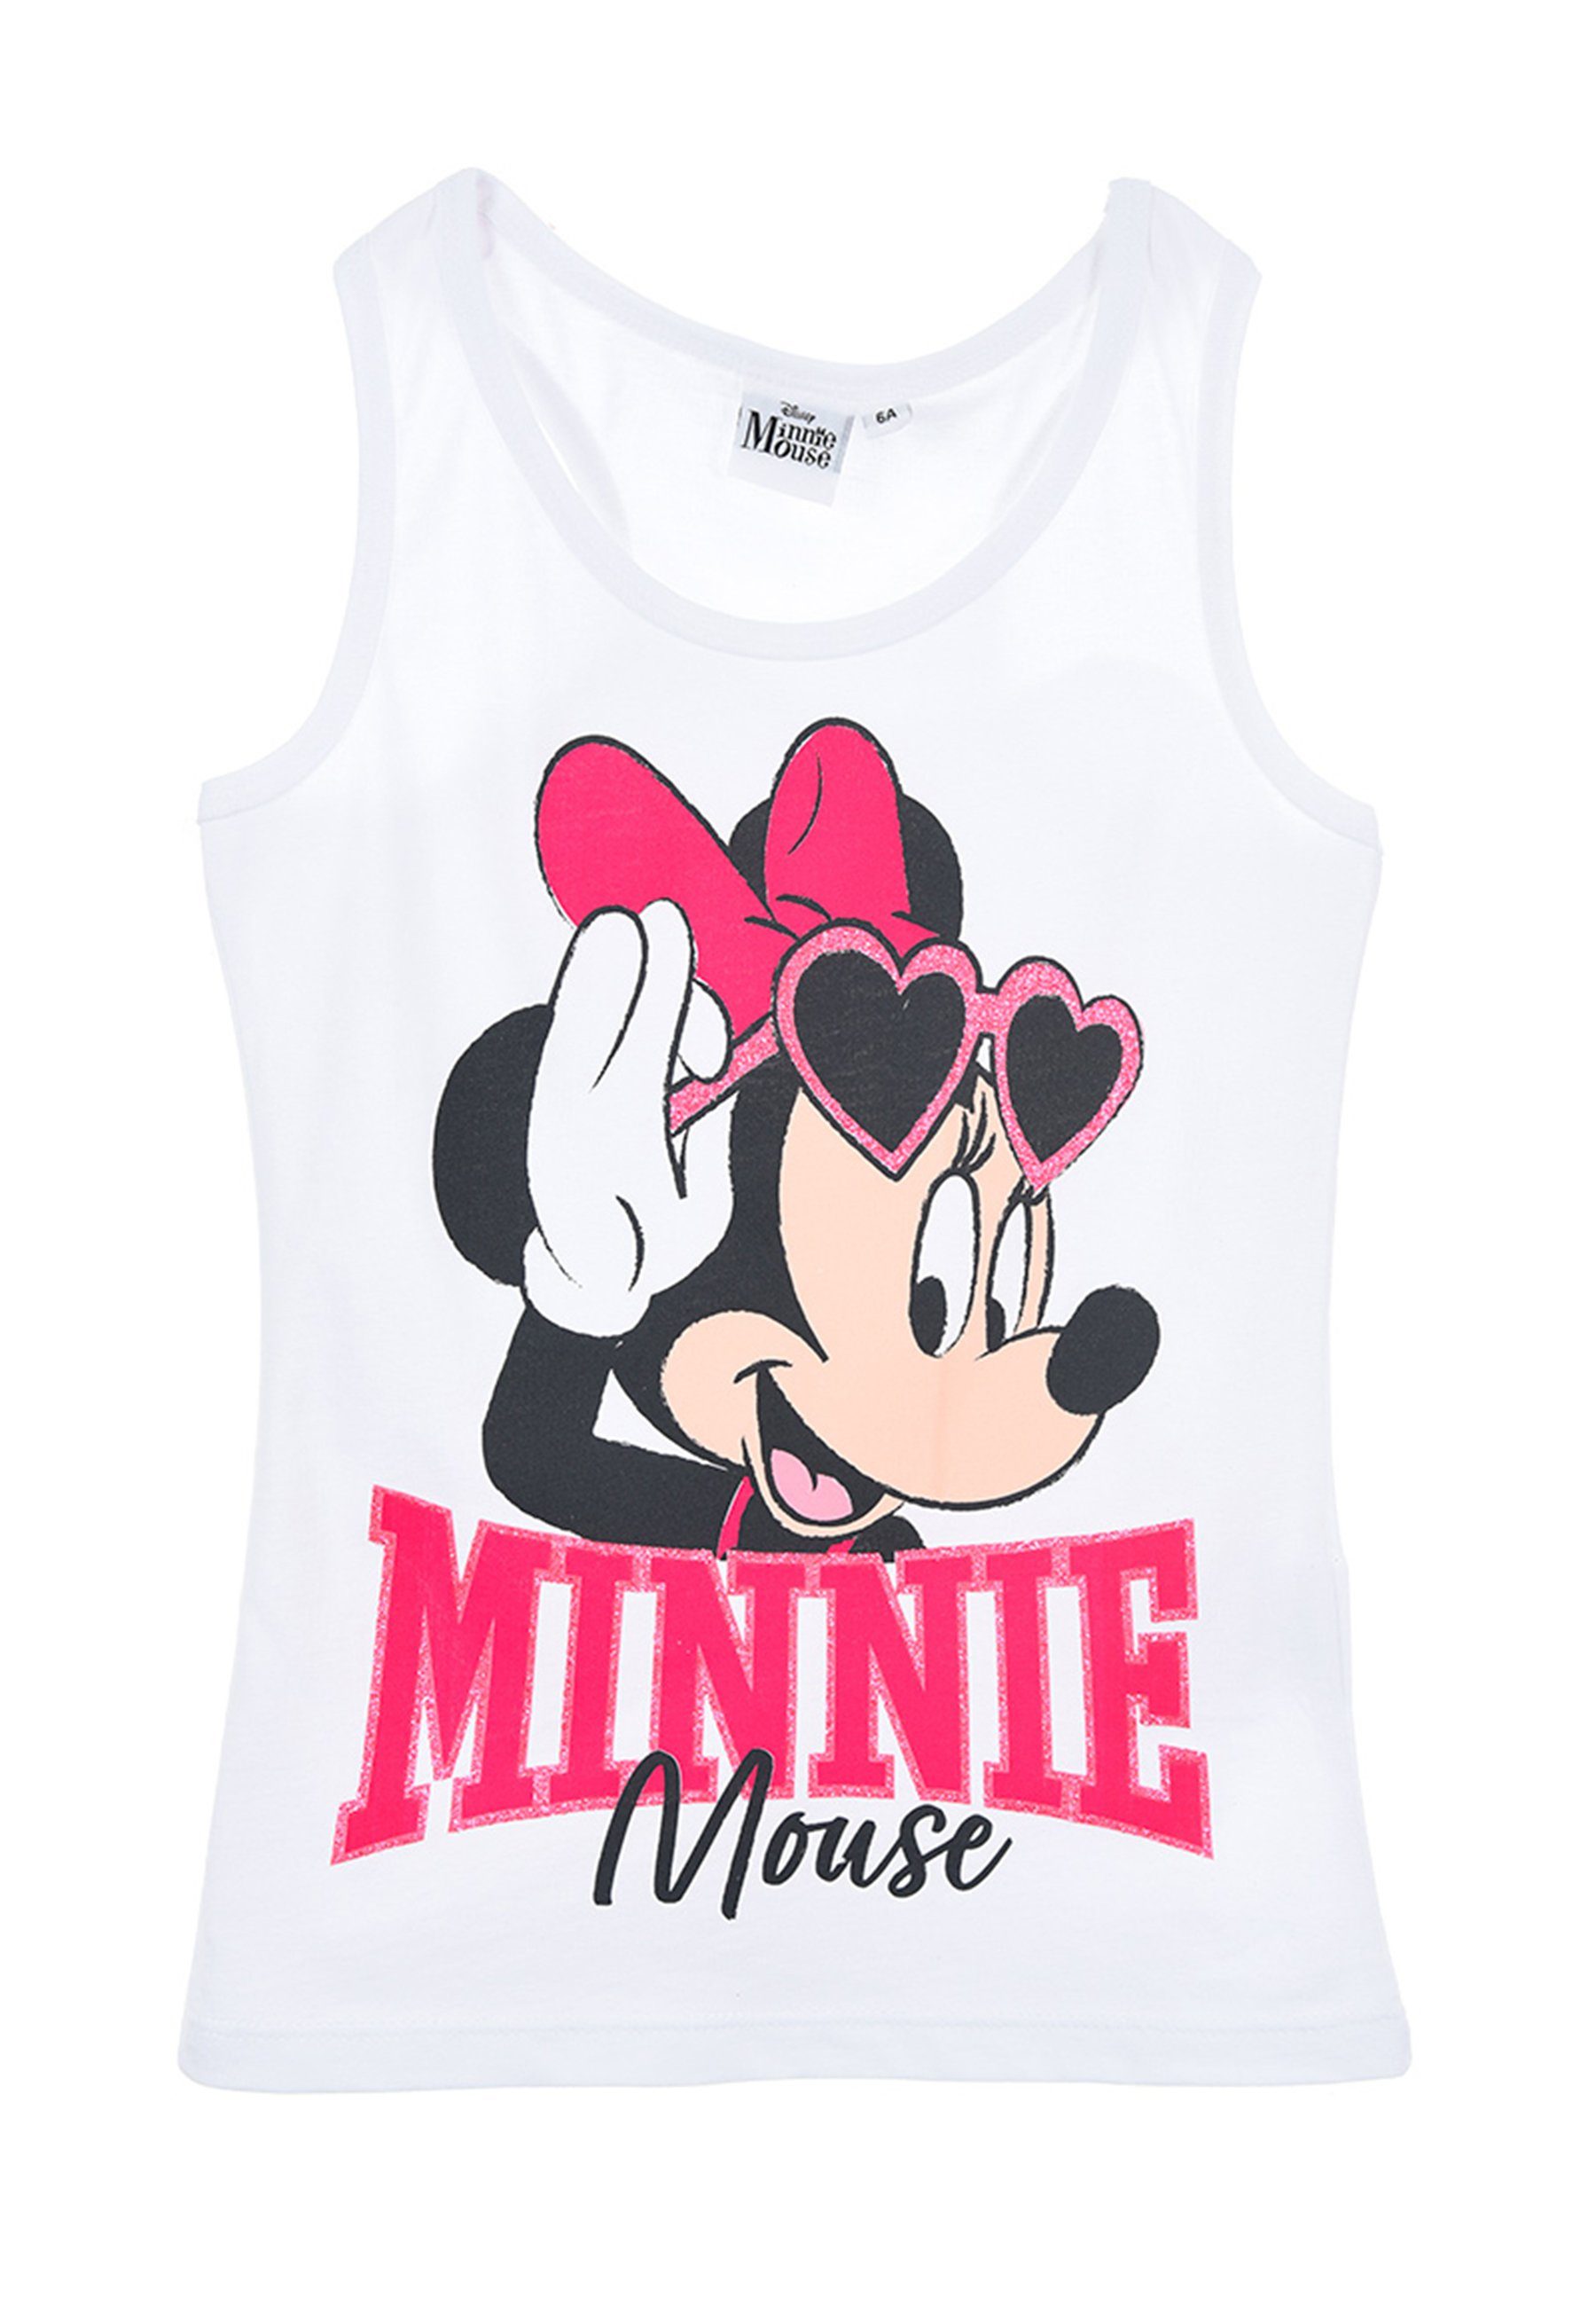 Mouse Träger-Shirt Muskelshirt Mädchen Minnie Sommer Kinder Shirt Disney Weiß Top